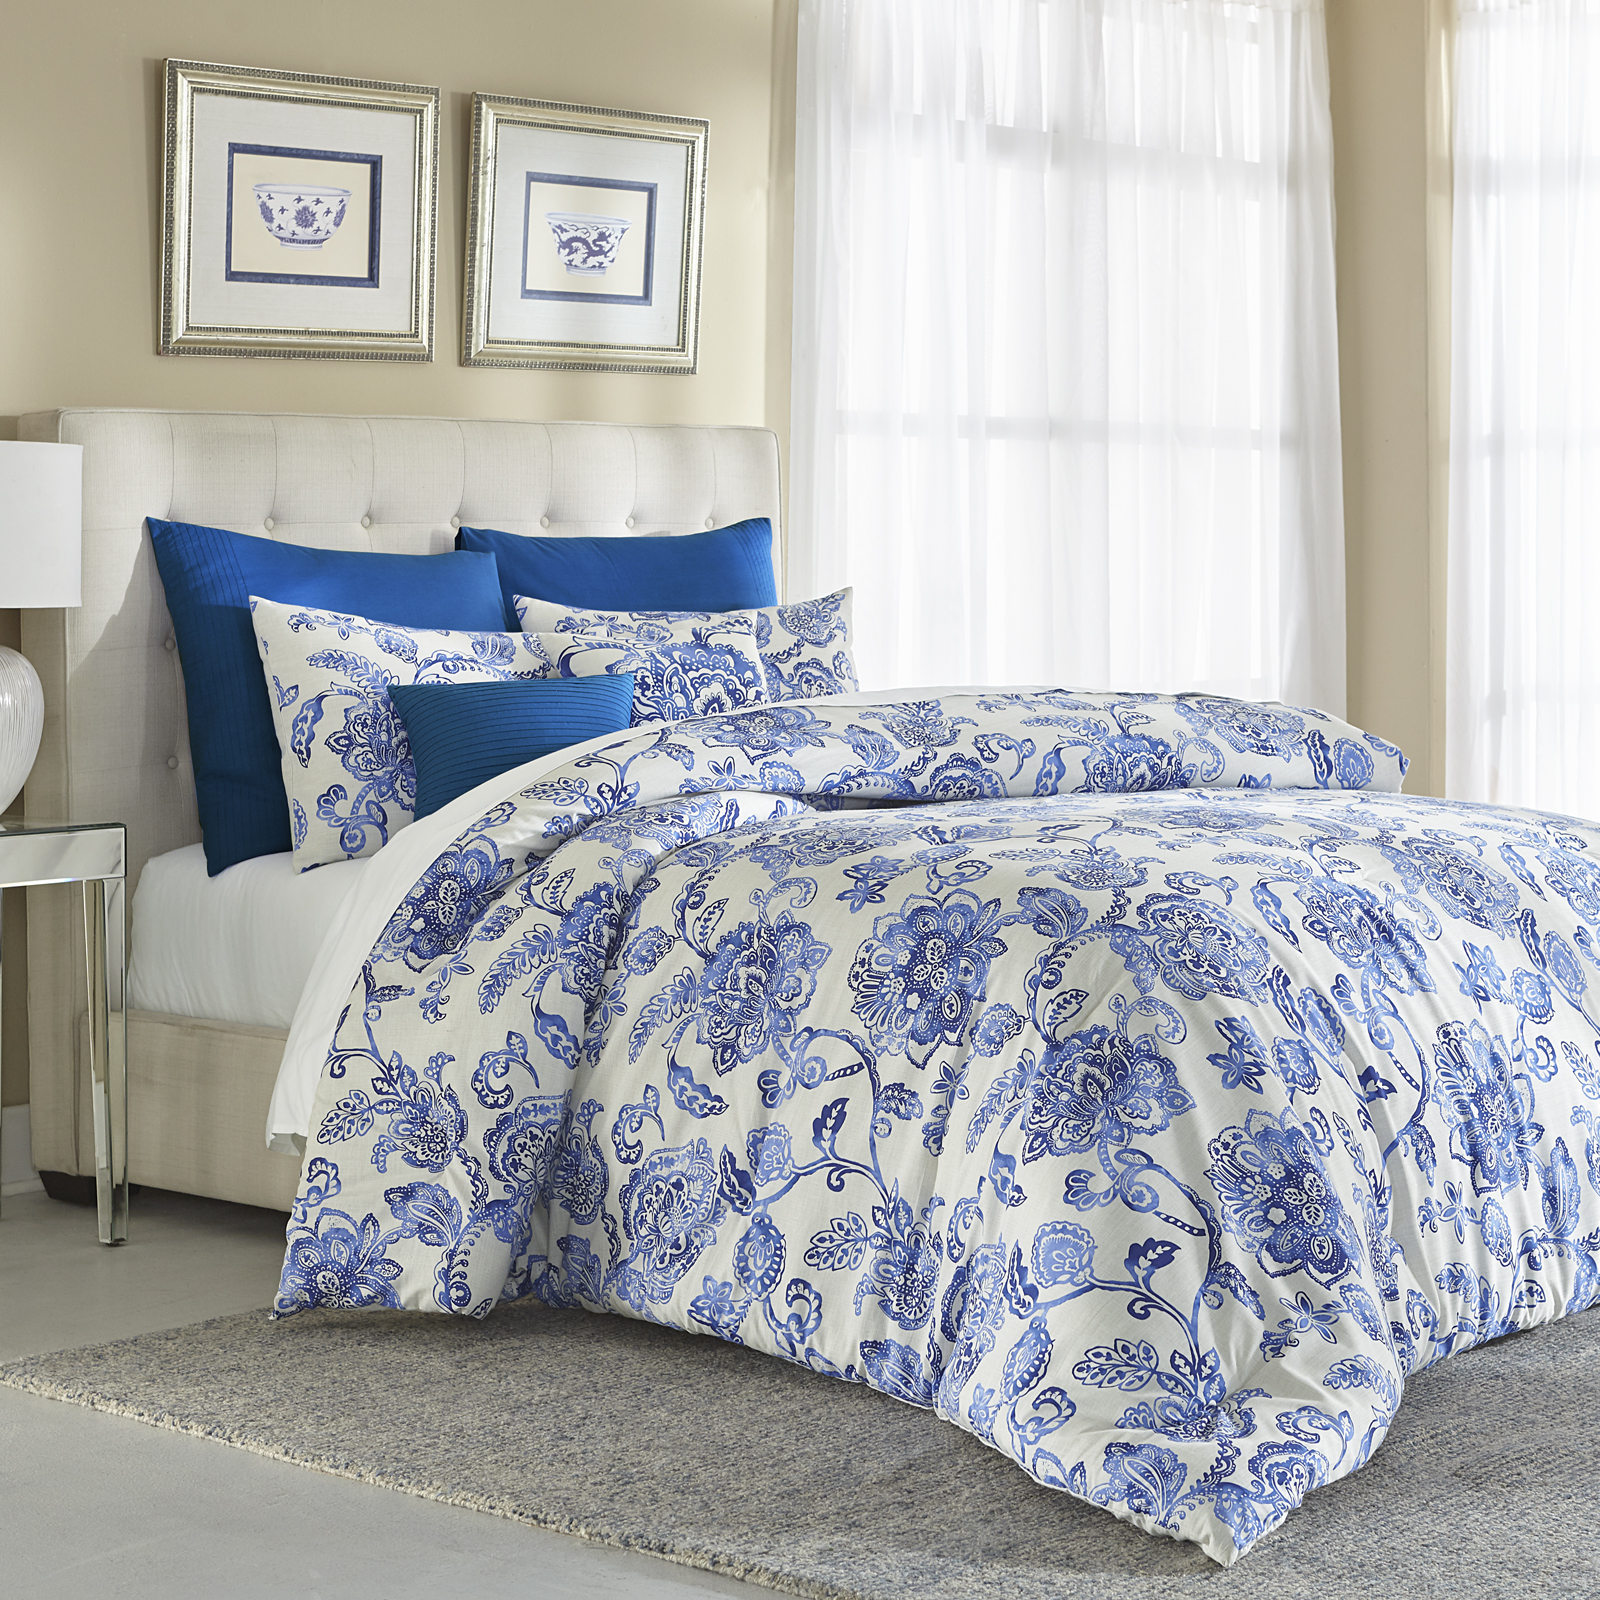 Cannon 7 Piece Comforter Set Floral Blue